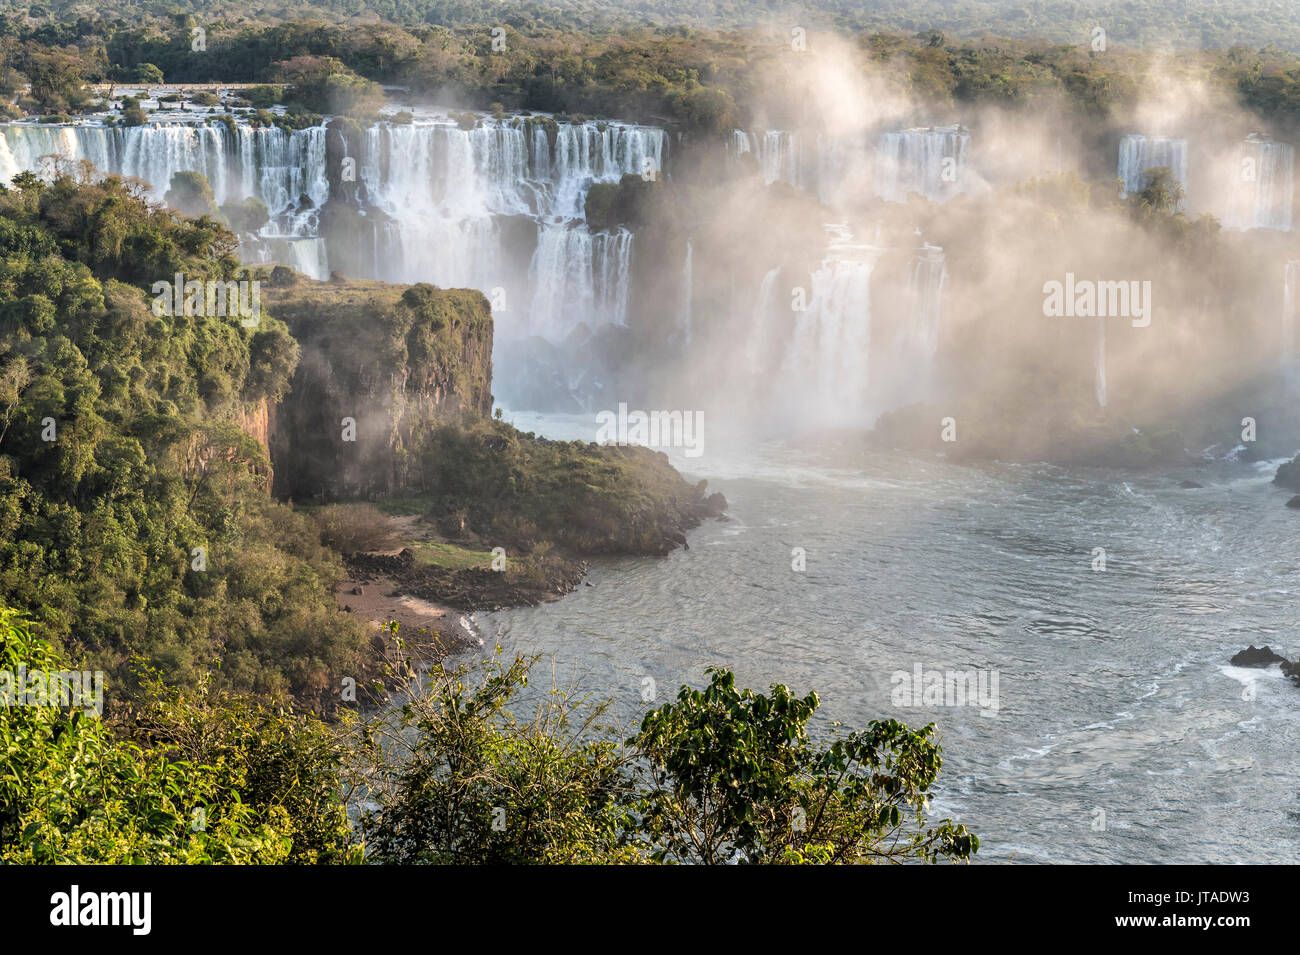 Vista de las Cataratas desde el lado brasileño, Sitio del Patrimonio Mundial de la UNESCO, la ciudad de Foz do Iguaçu, estado de Paraná, Brasil, América del Sur Foto de stock